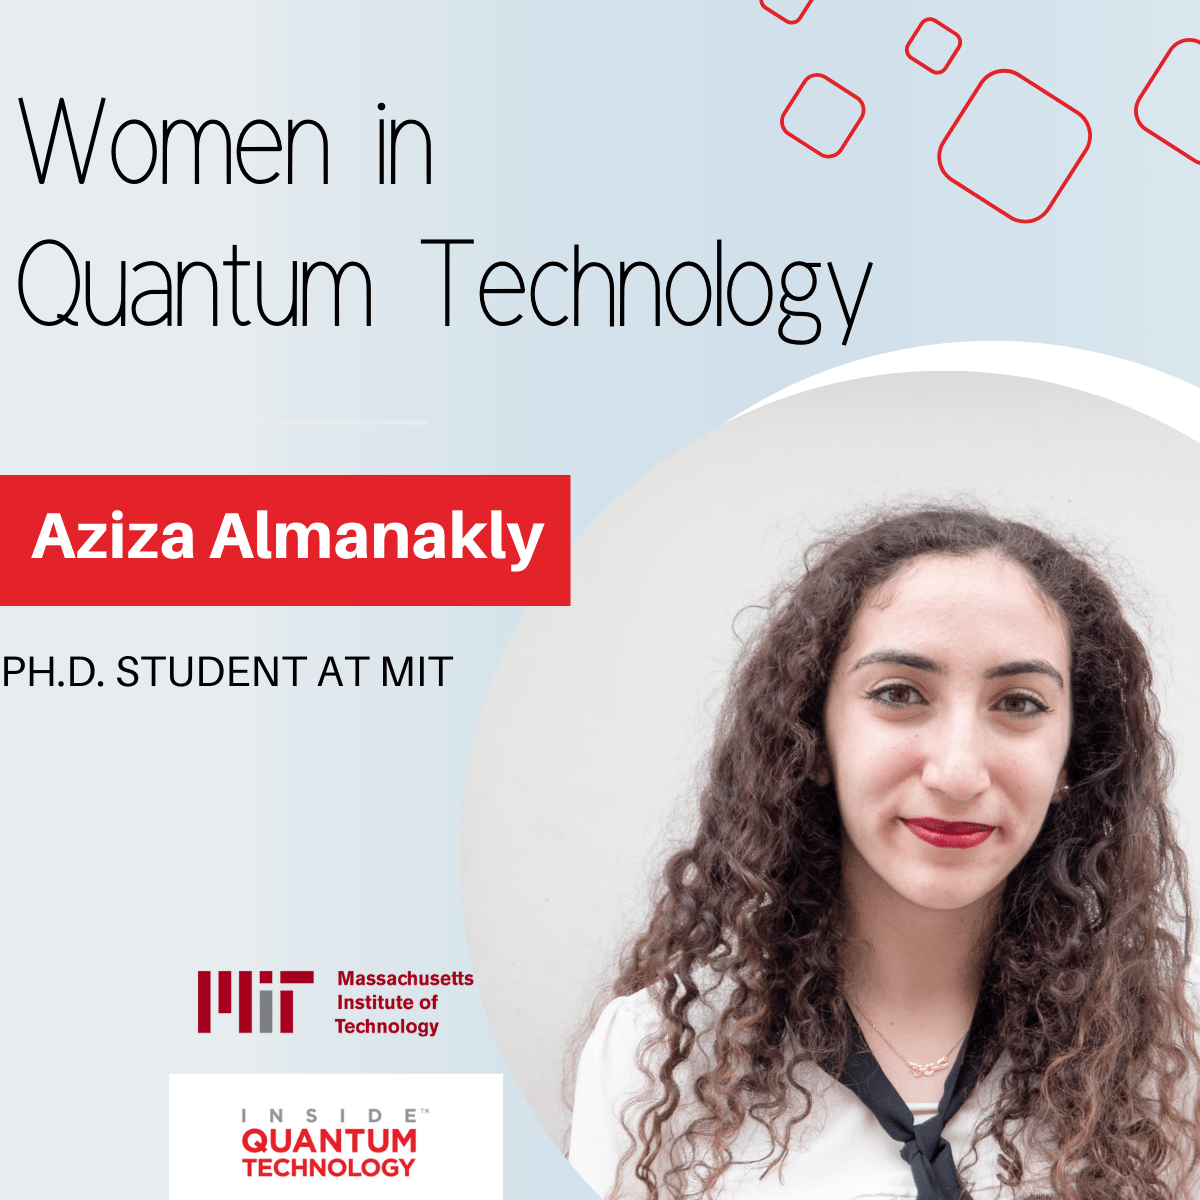 MIT 대학원생인 Aziza Almanakly가 양자 컴퓨팅 및 포토닉스에 대한 교육과 연구에 대해 이야기합니다.